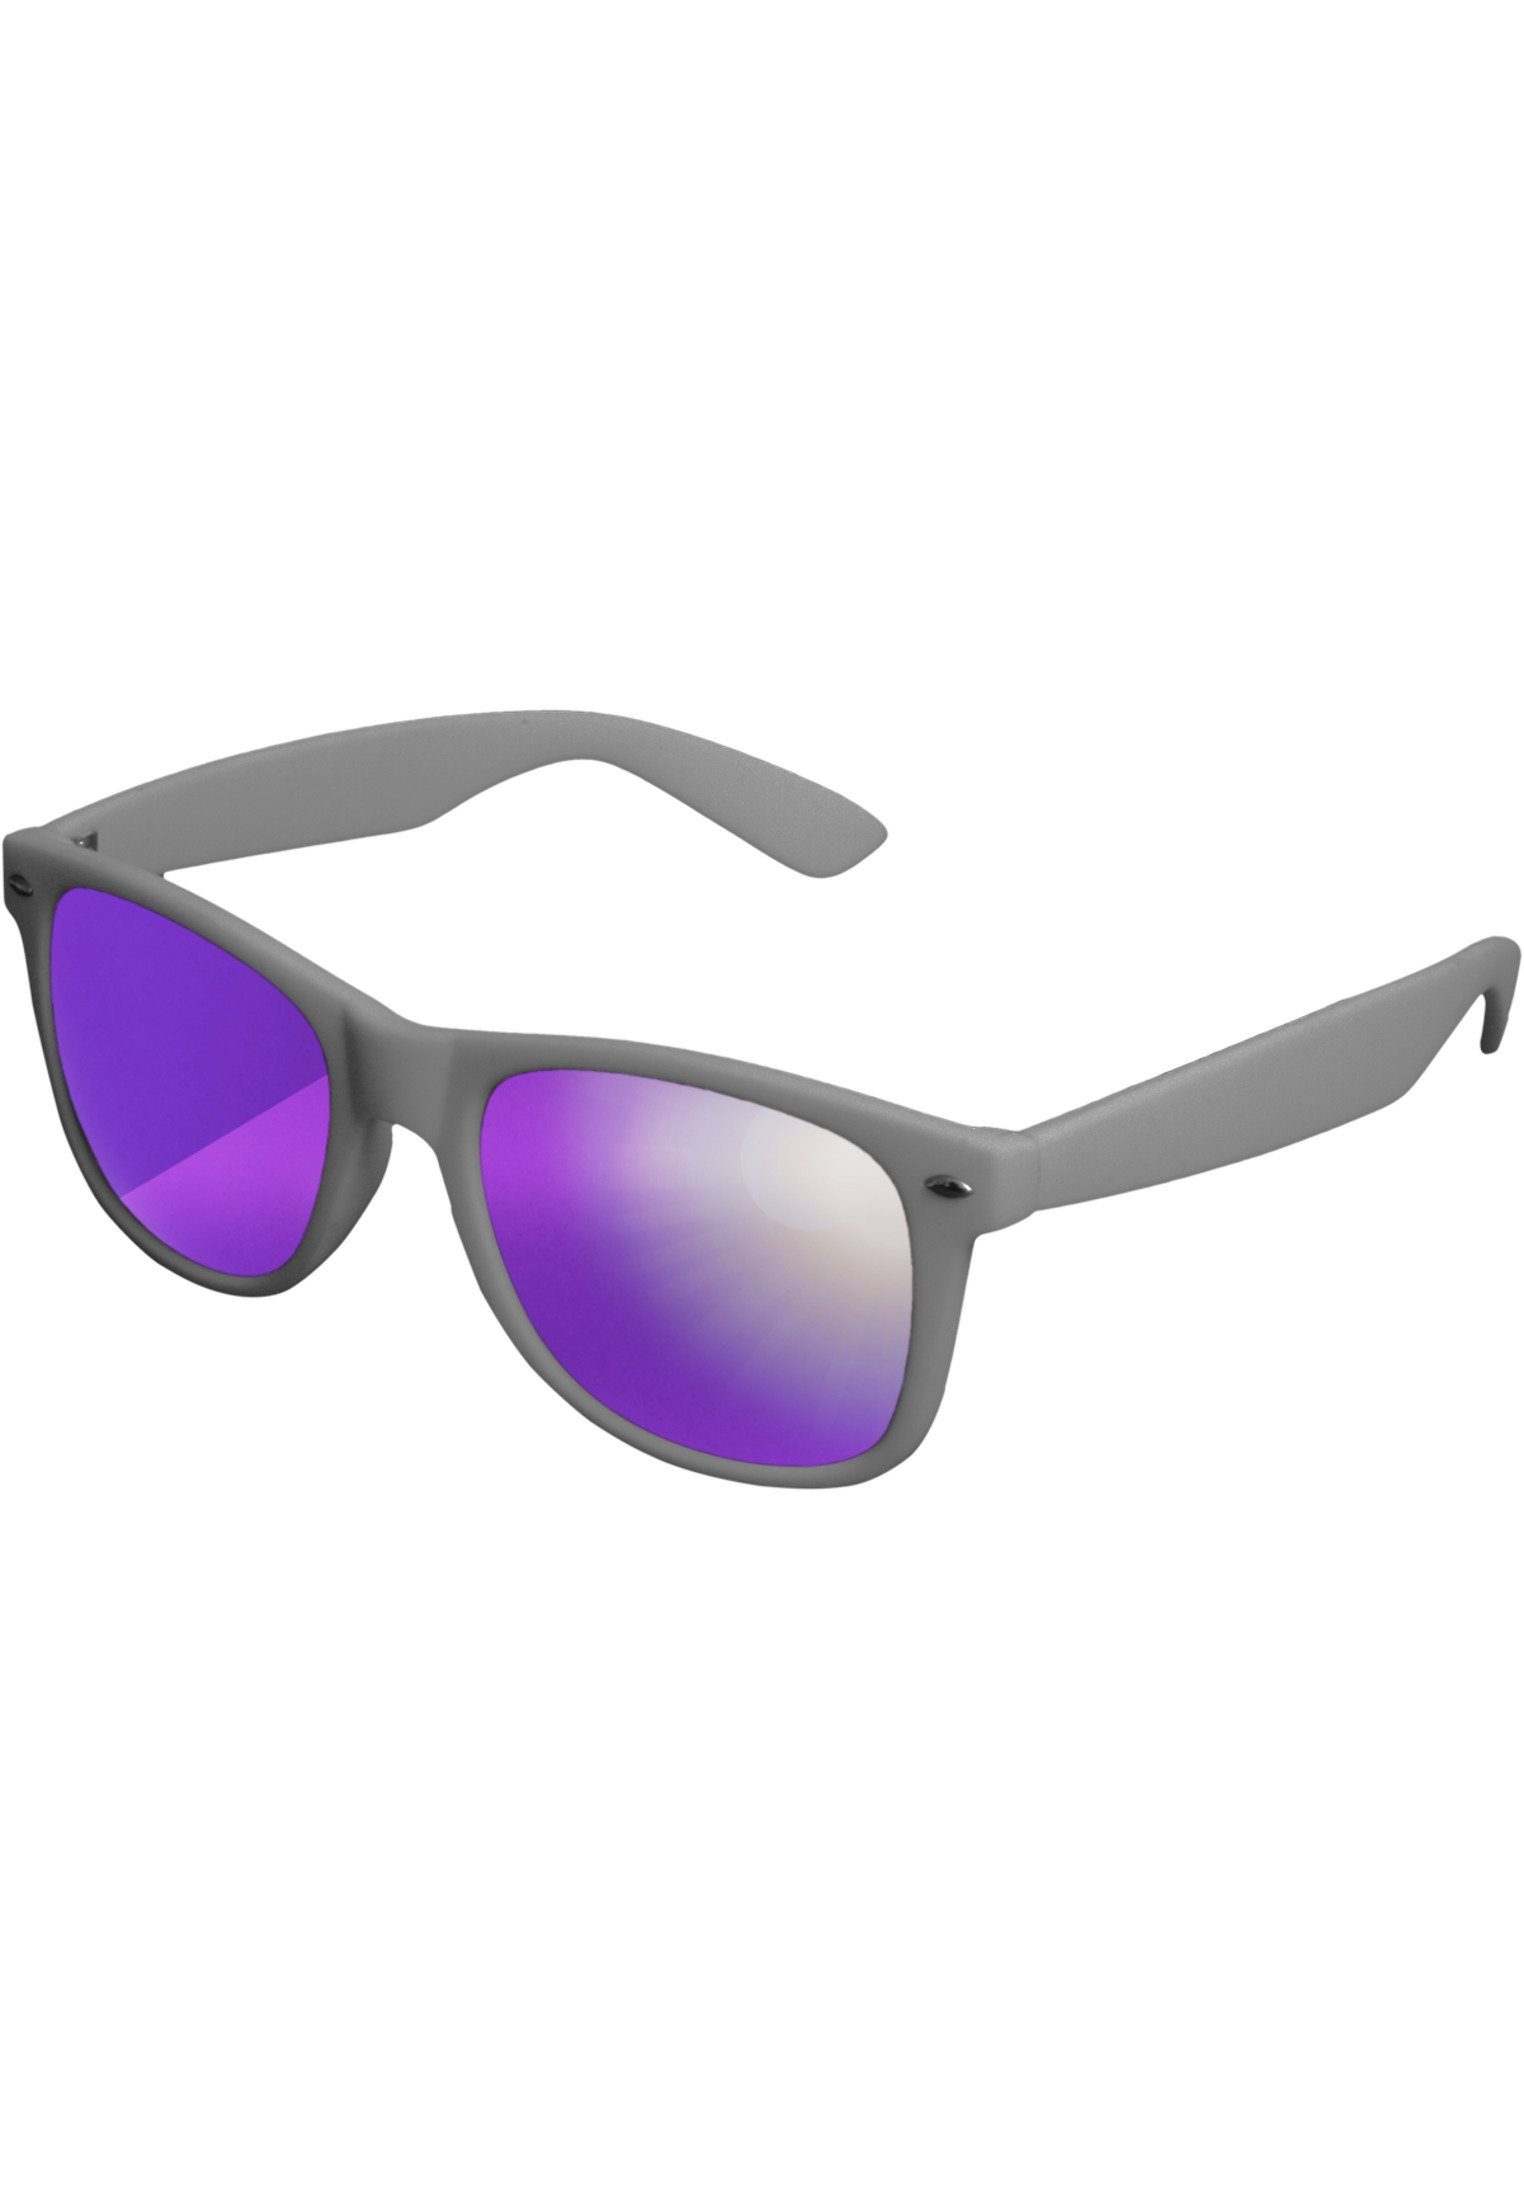 MSTRDS Sonnenbrille Accessoires Sunglasses Likoma Mirror, Ideal auch für  Sport im Freien geeignet | Sonnenbrillen